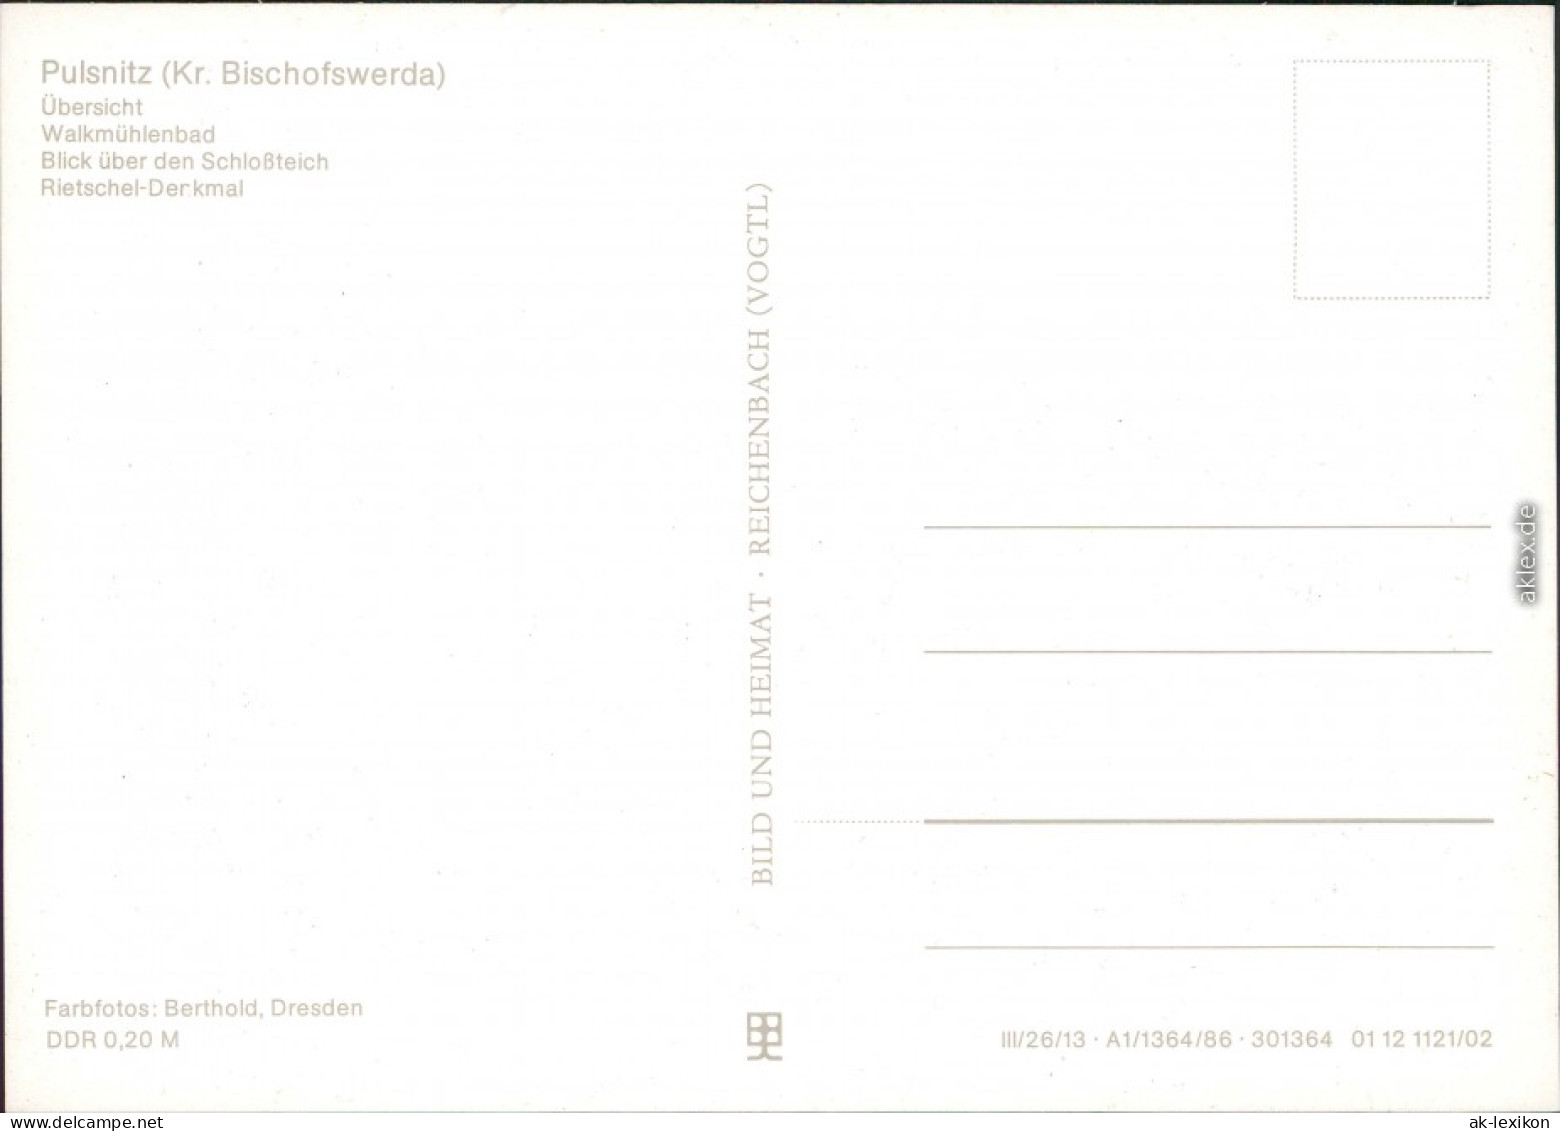 Pulsnitz Übersicht, Walkmühlenbad, Schlossteich, Rietschel-Denkmal 1986 - Pulsnitz